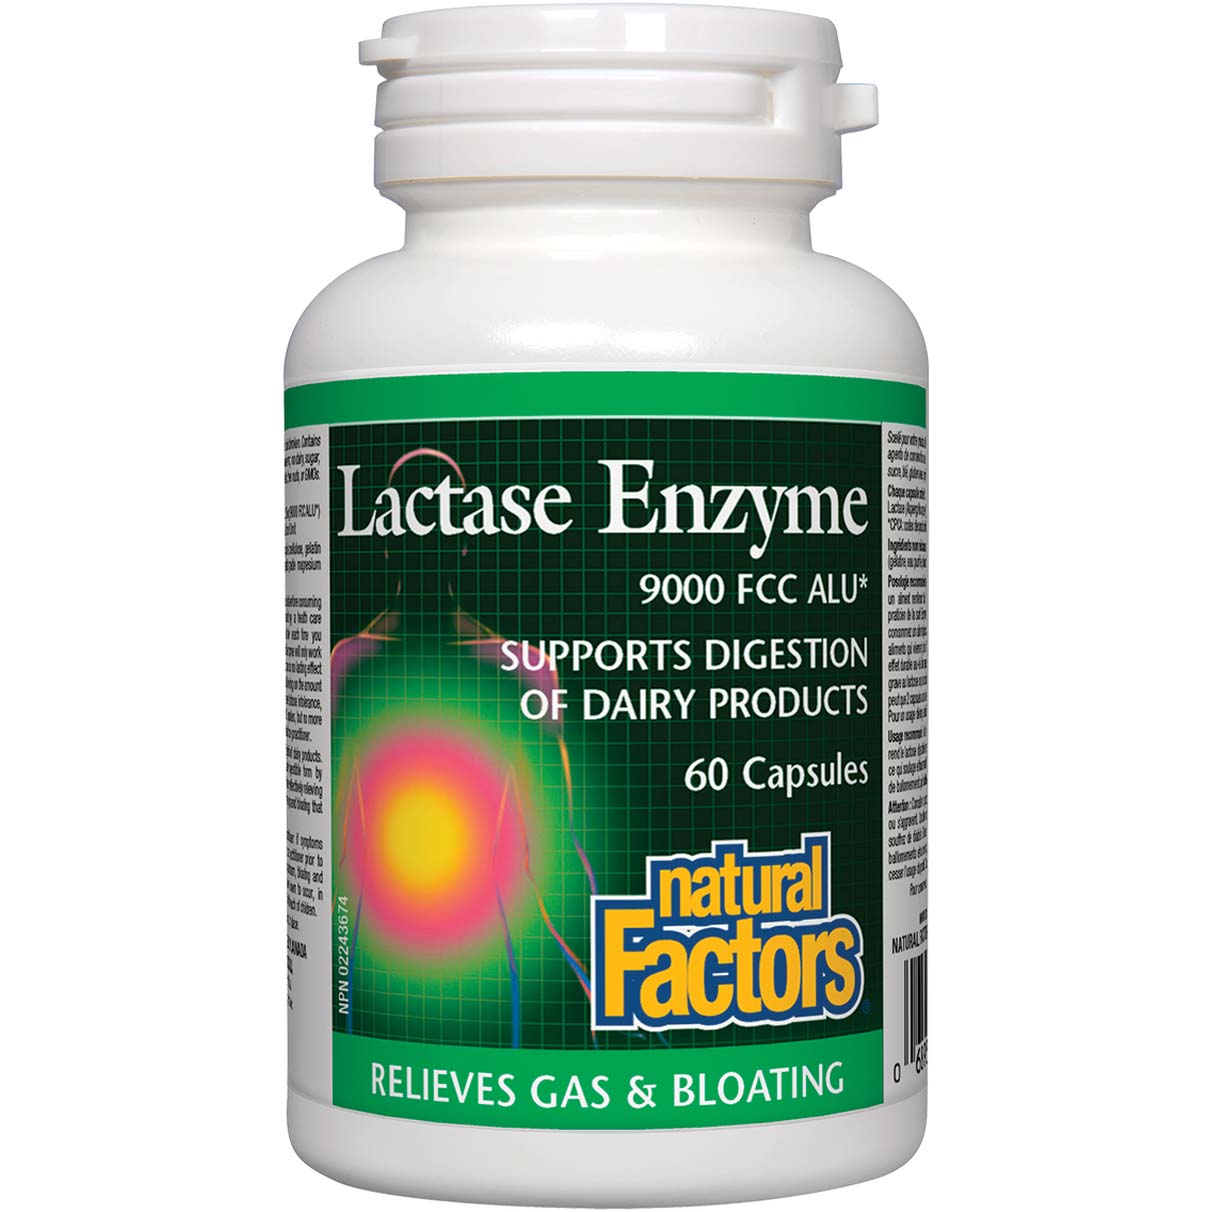 Natural Factors Lactase Enzyme 60 Capsules